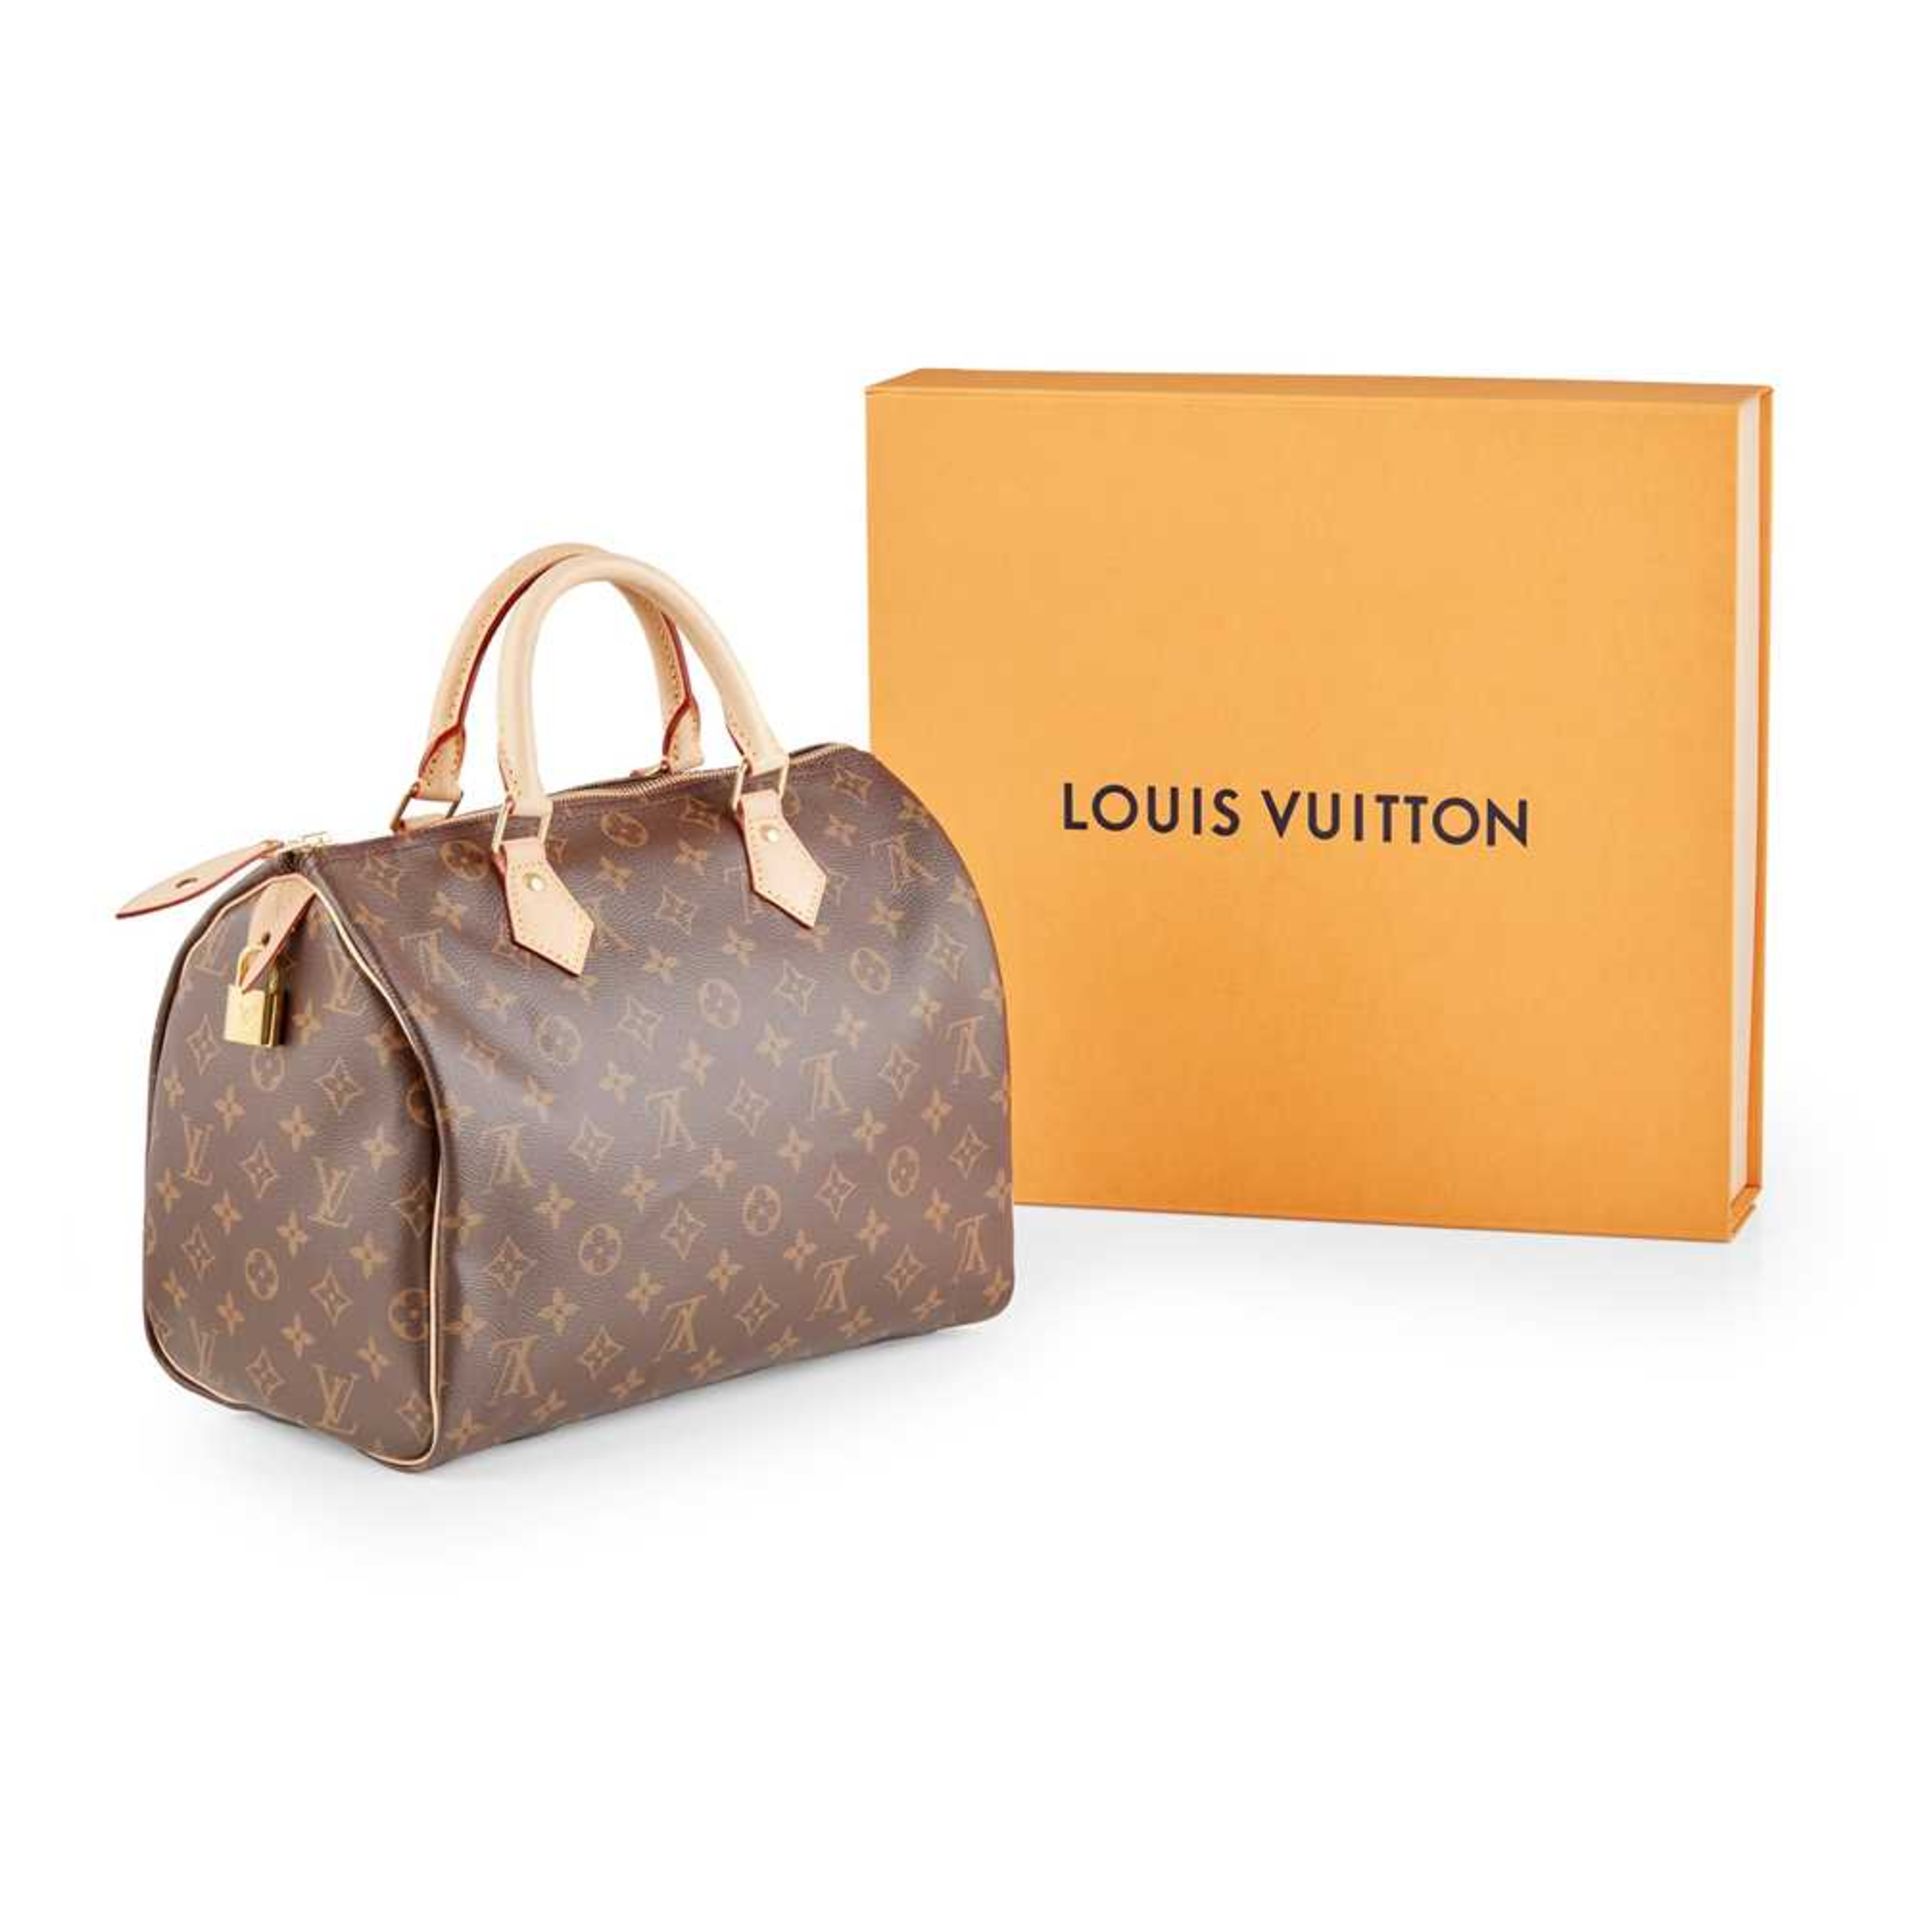 A Speedy 30 handbag, Louis Vuitton